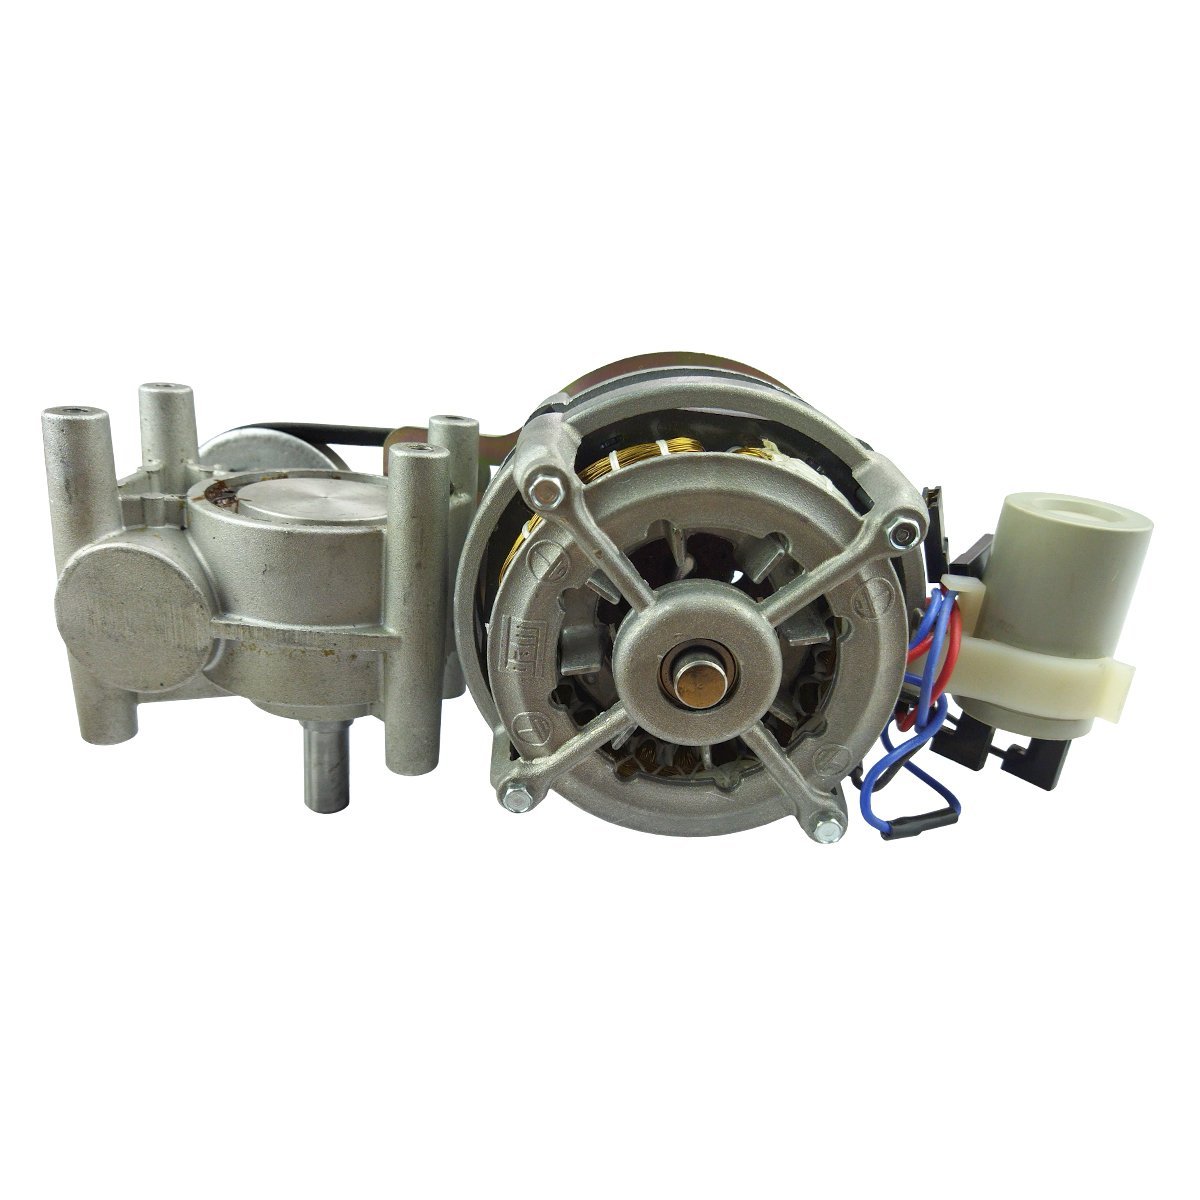 Motoredutor 1/4 CV 1/76 completo conjunto aluminio potencia: 220 - 2